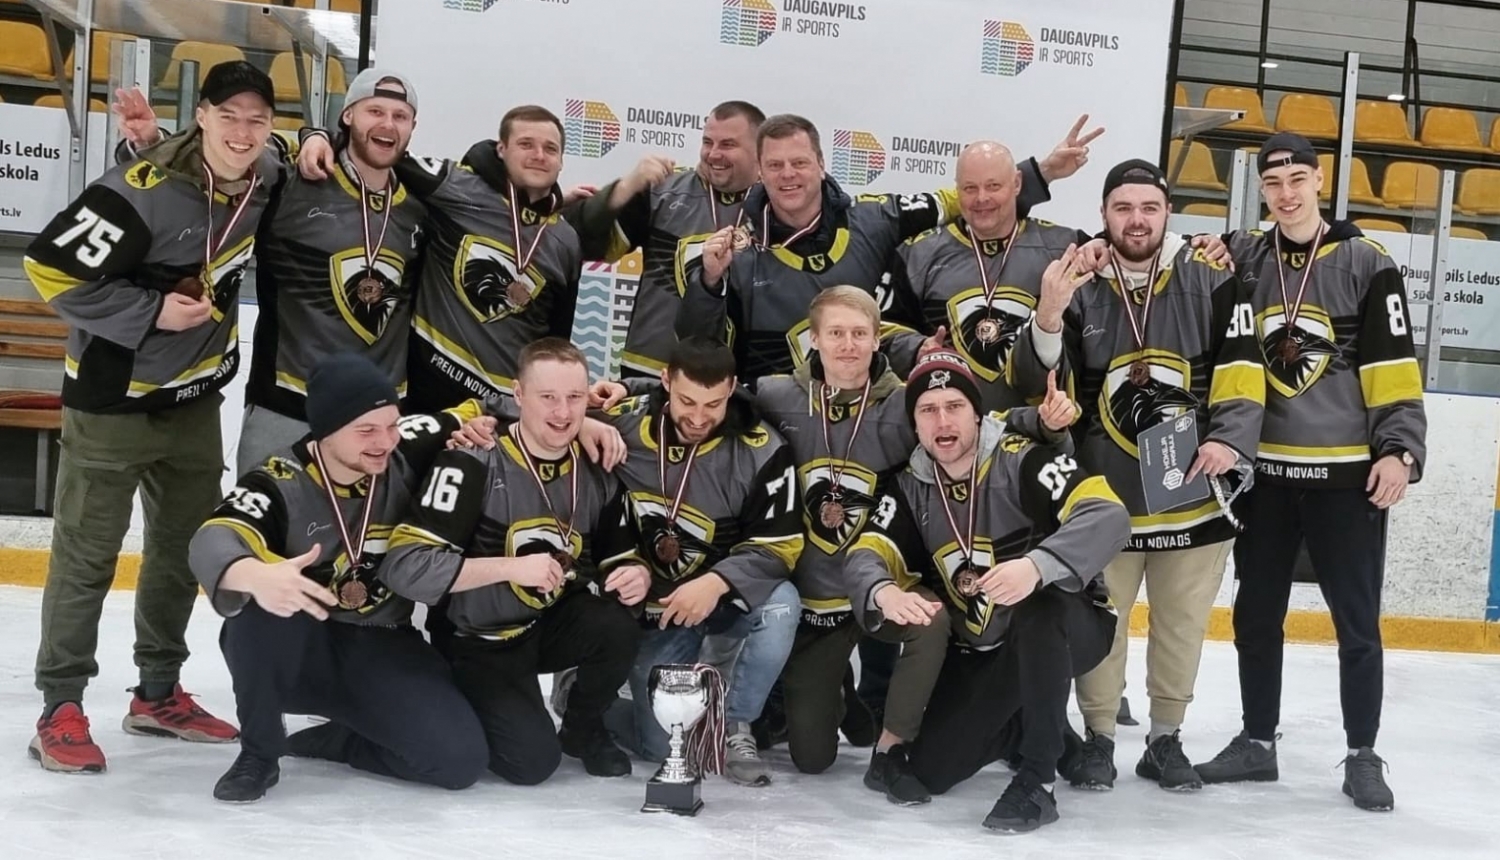 Preiļu hokeja komanda izcīnījusi bronzas medaļas Daugavpils atklātajā amatieru hokeja čempionātā